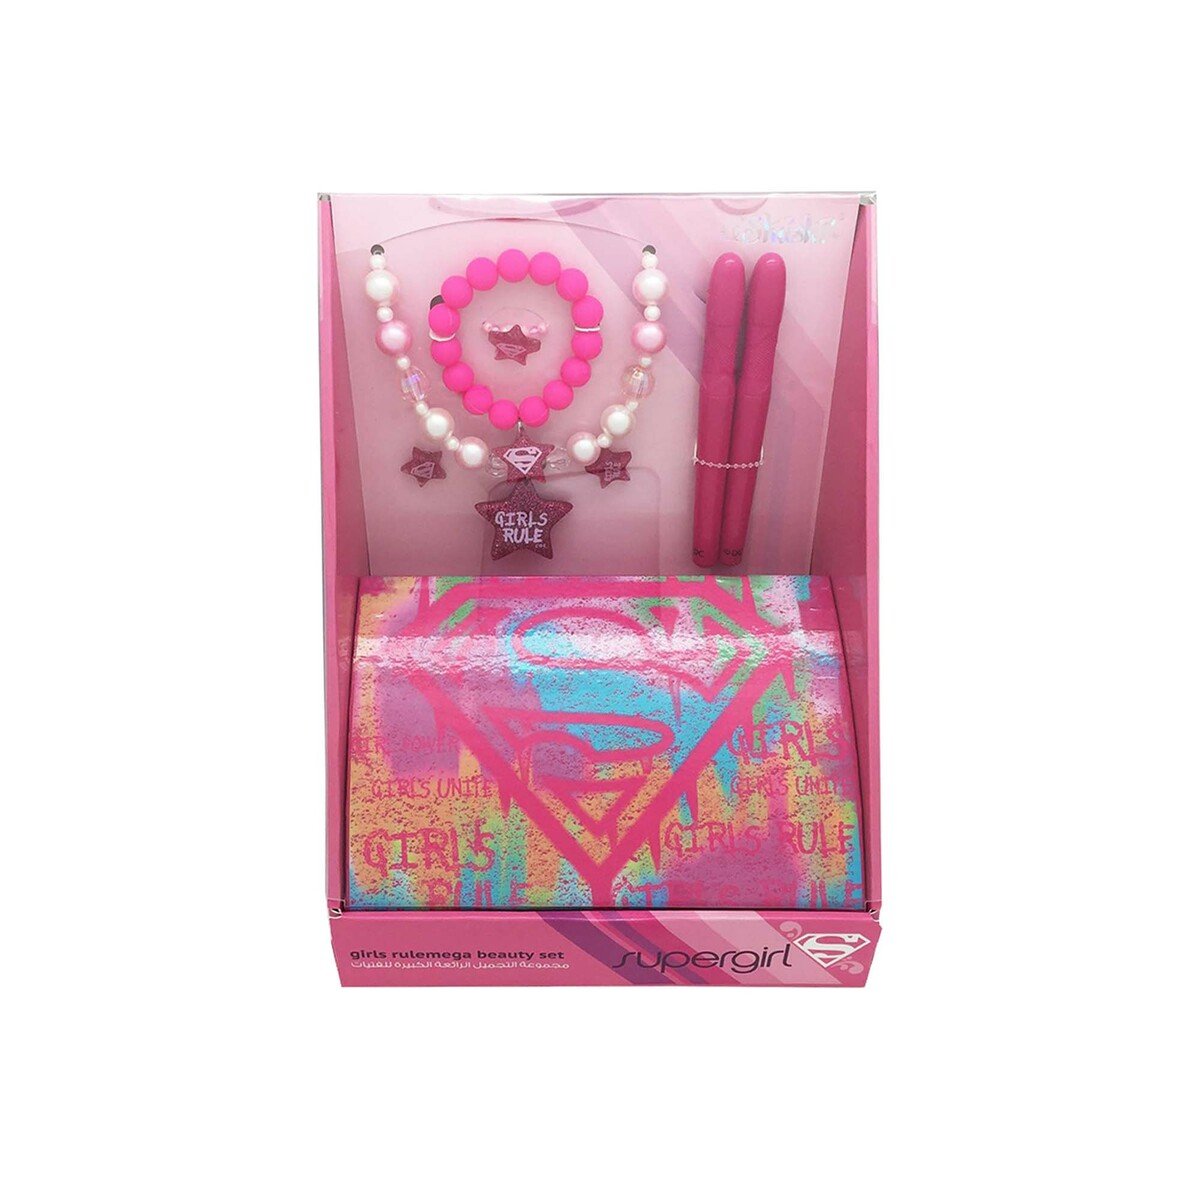 Supergirl Girls Rule Mega Beauty Set - Pink 46889